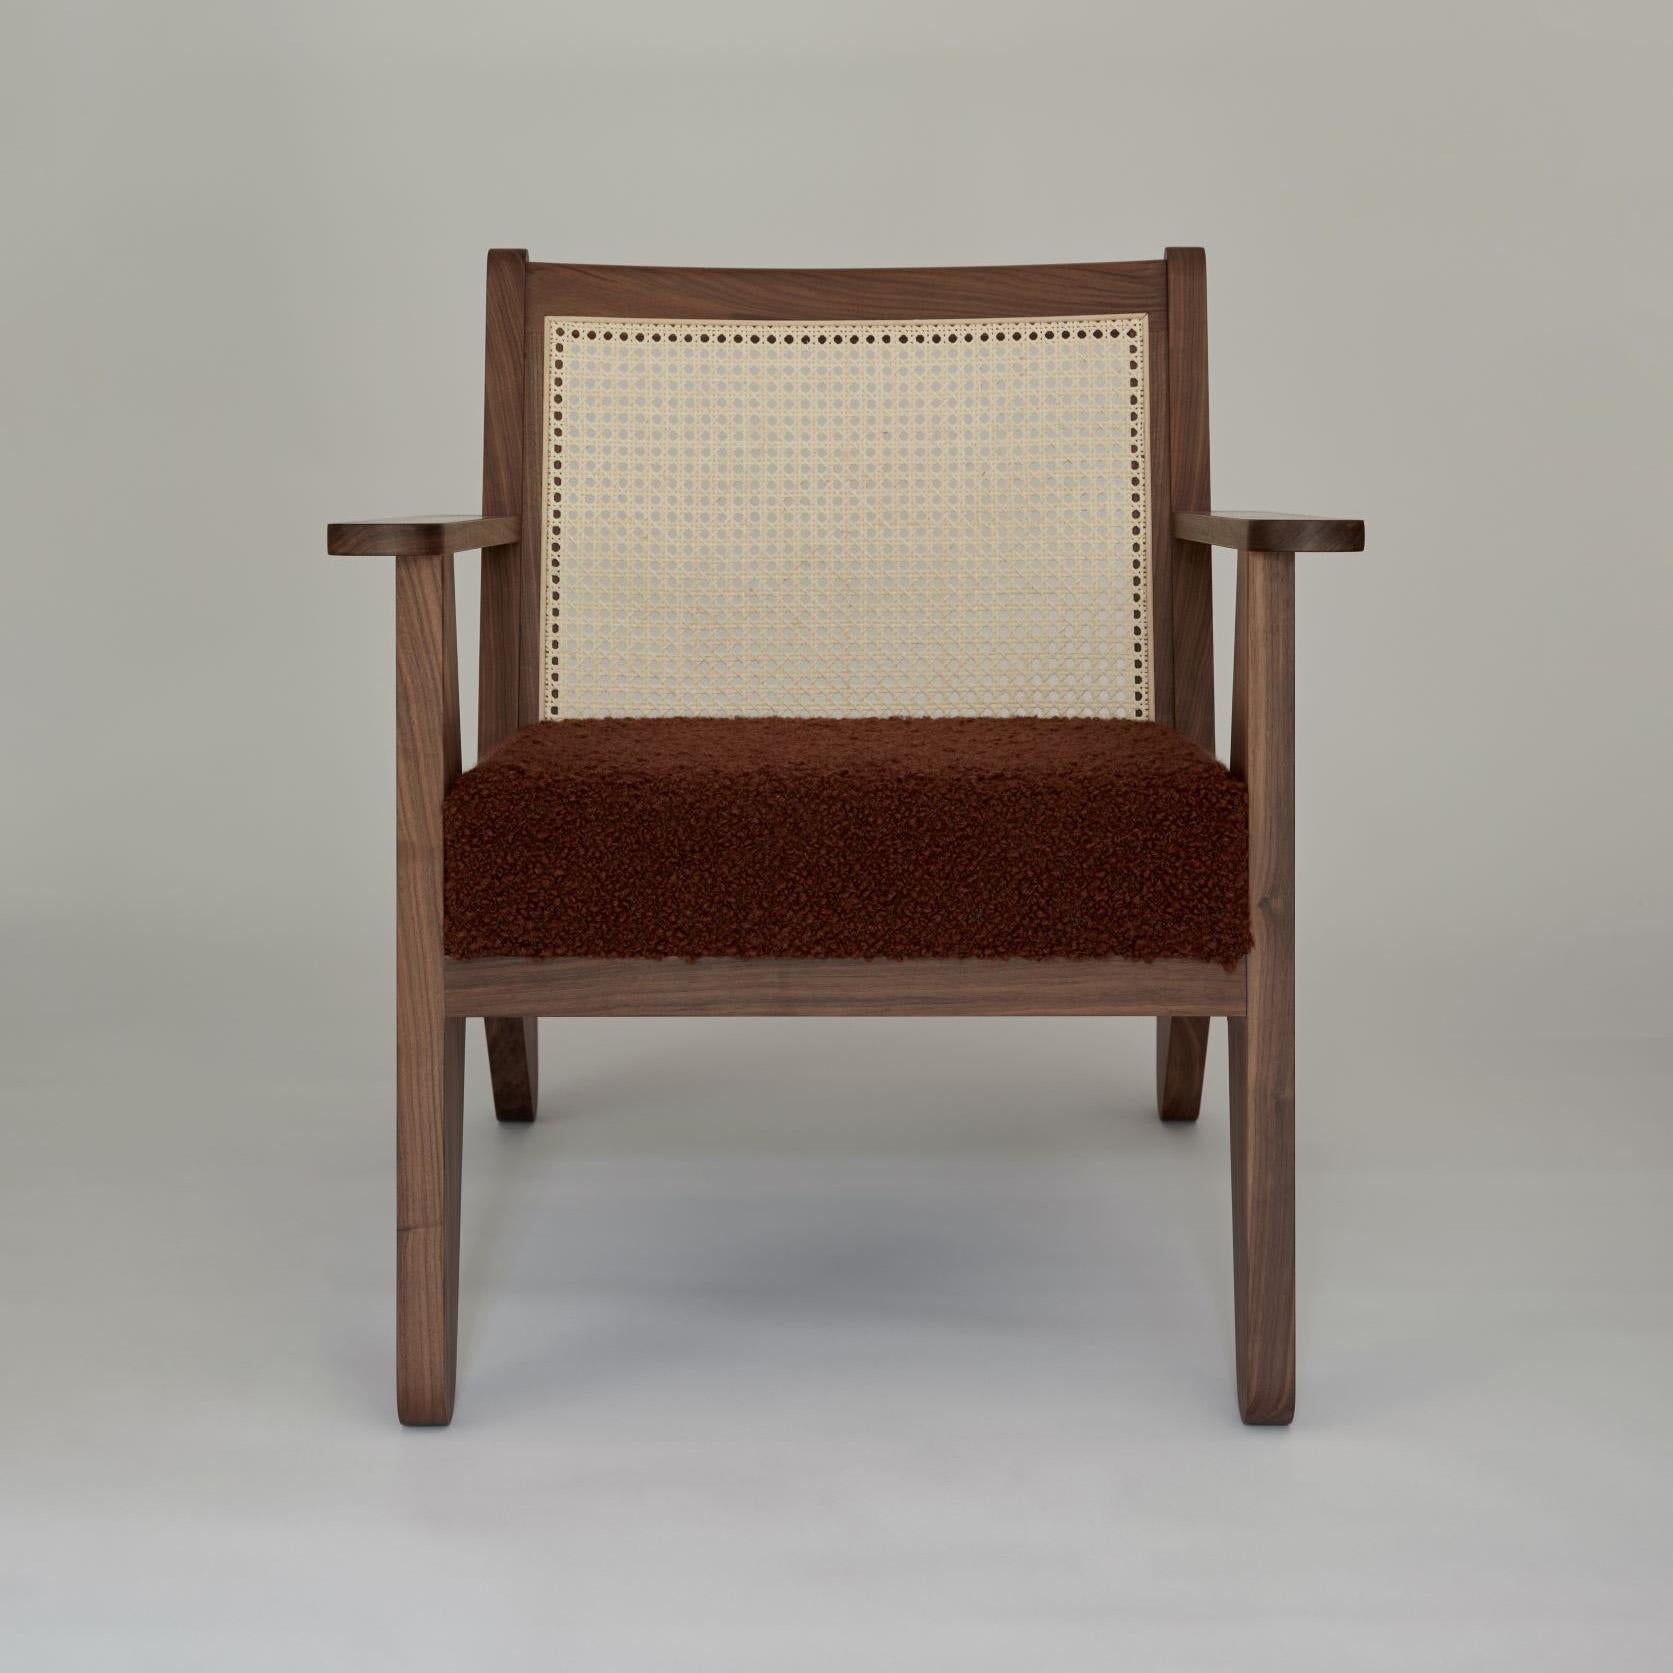 Der Booham-Stuhl mit Armlehnen von Daniel Boddam Studio vereint zeitgenössische und modernistische Einflüsse mit Boddams typisch australischer Sensibilität.

Der Booham Chair steht in der großen Tradition von Charlotte Perriand und Pierre Jeanneret